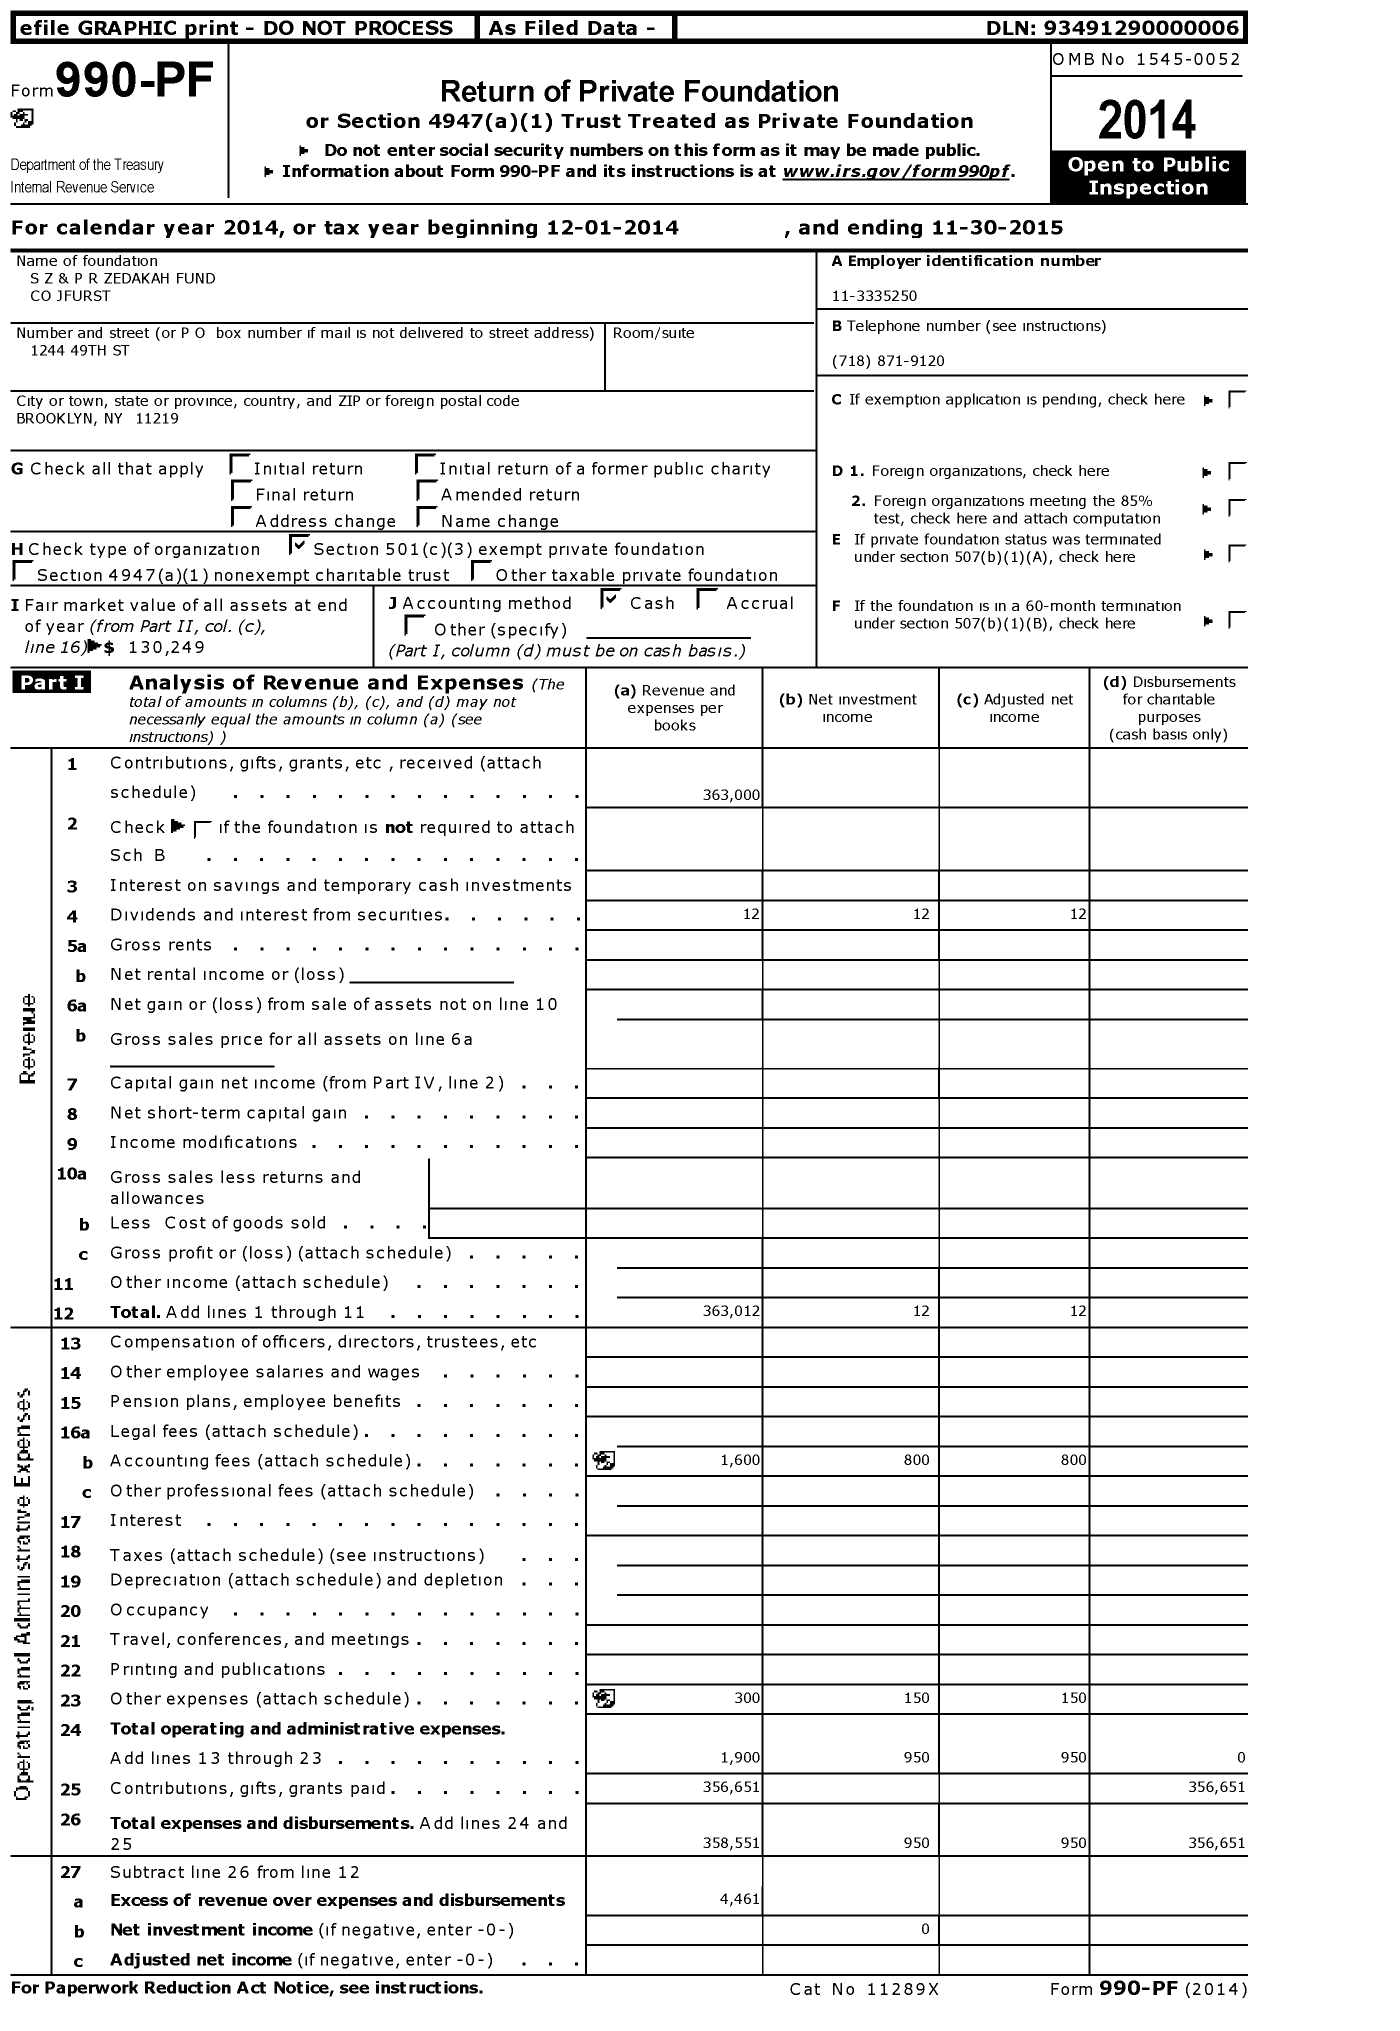 Image of first page of 2014 Form 990PF for S Z and P R Zedakah Fund